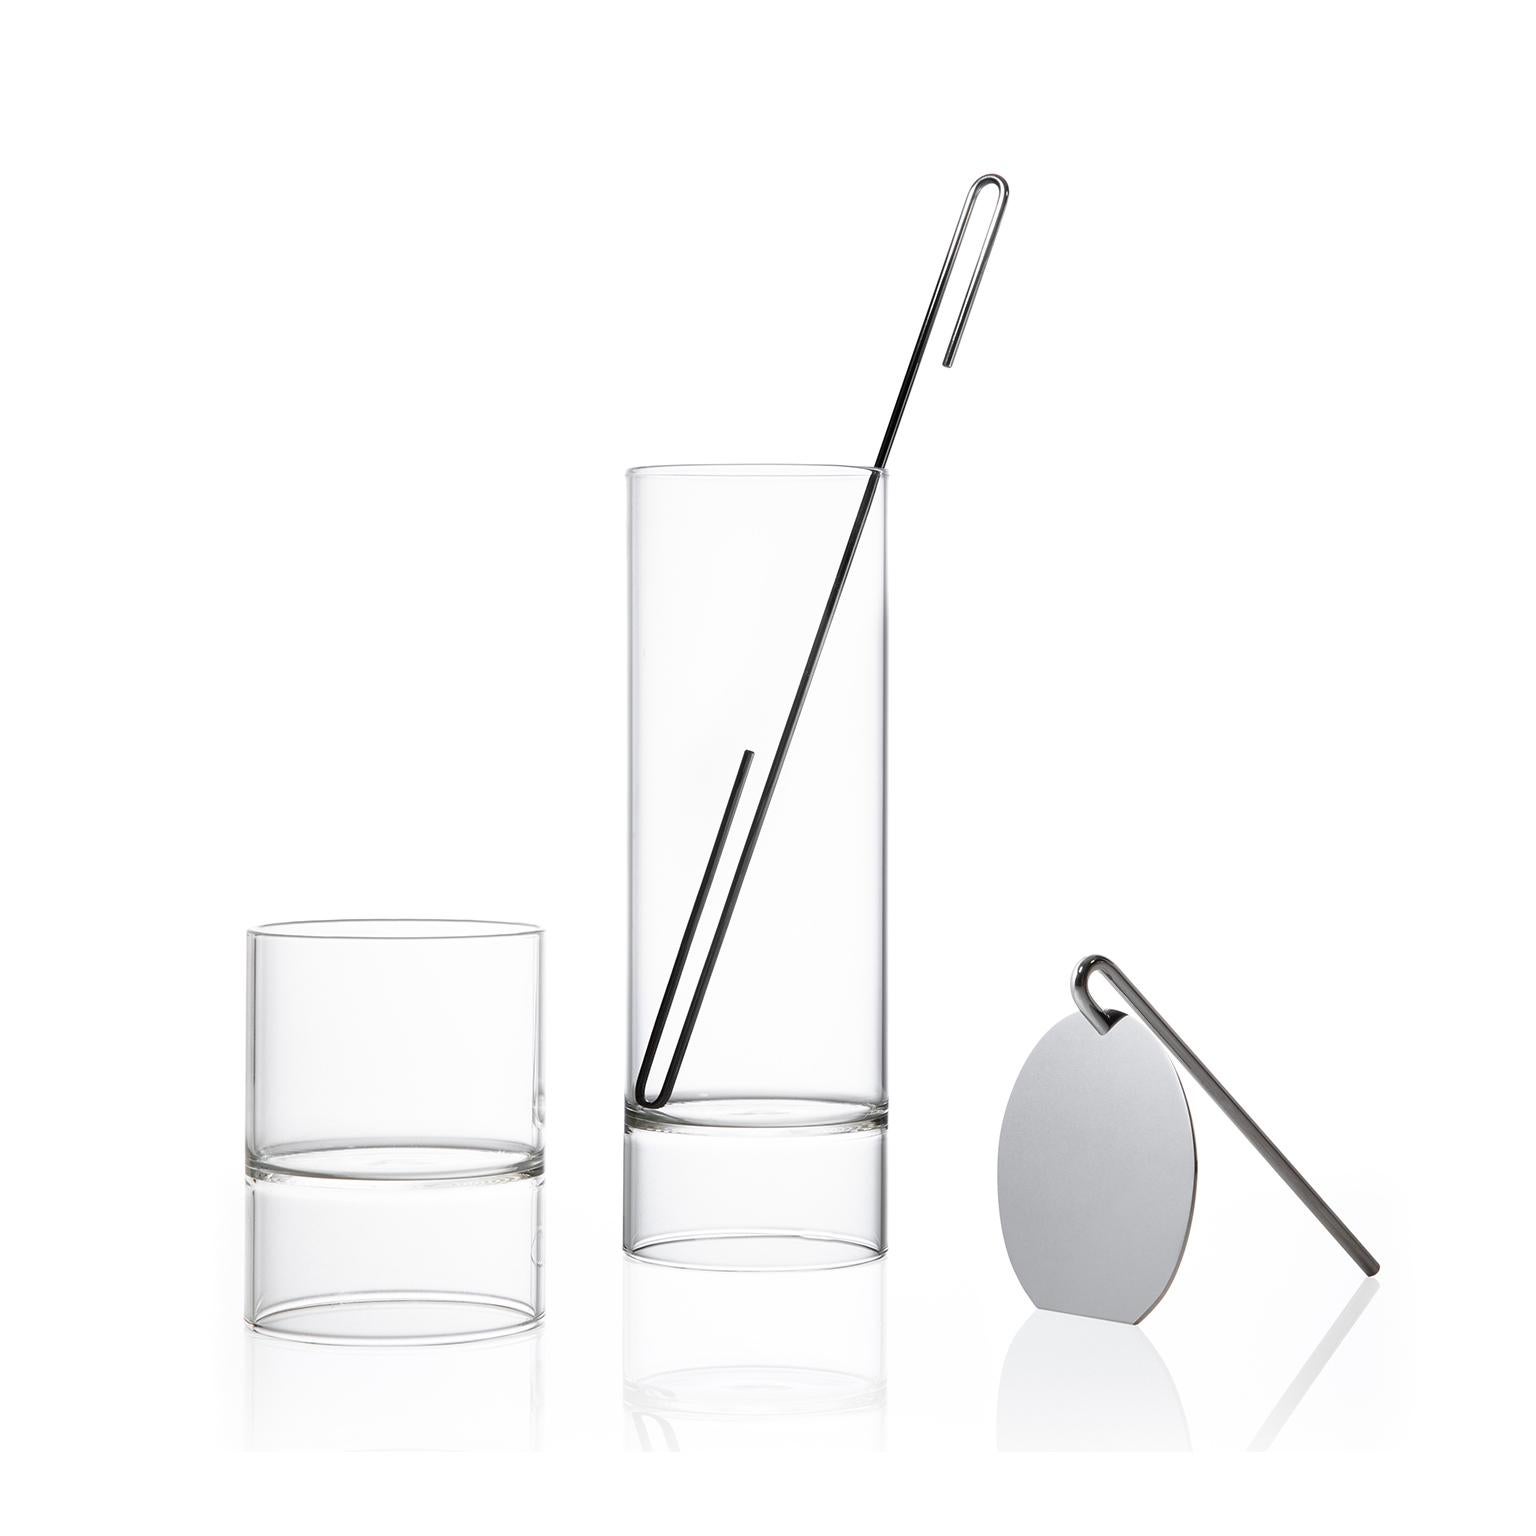 Das moderne Set aus tschechischem Glas der minimalistischen Revolution-Kollektion umfasst eine Karaffe für Cocktailmixer, ein Sieb, einen Rührstab und vier Rocks Martini-Gläser mit zwei Enden. 

Dieser Artikel ist auch in den USA erhältlich

Die